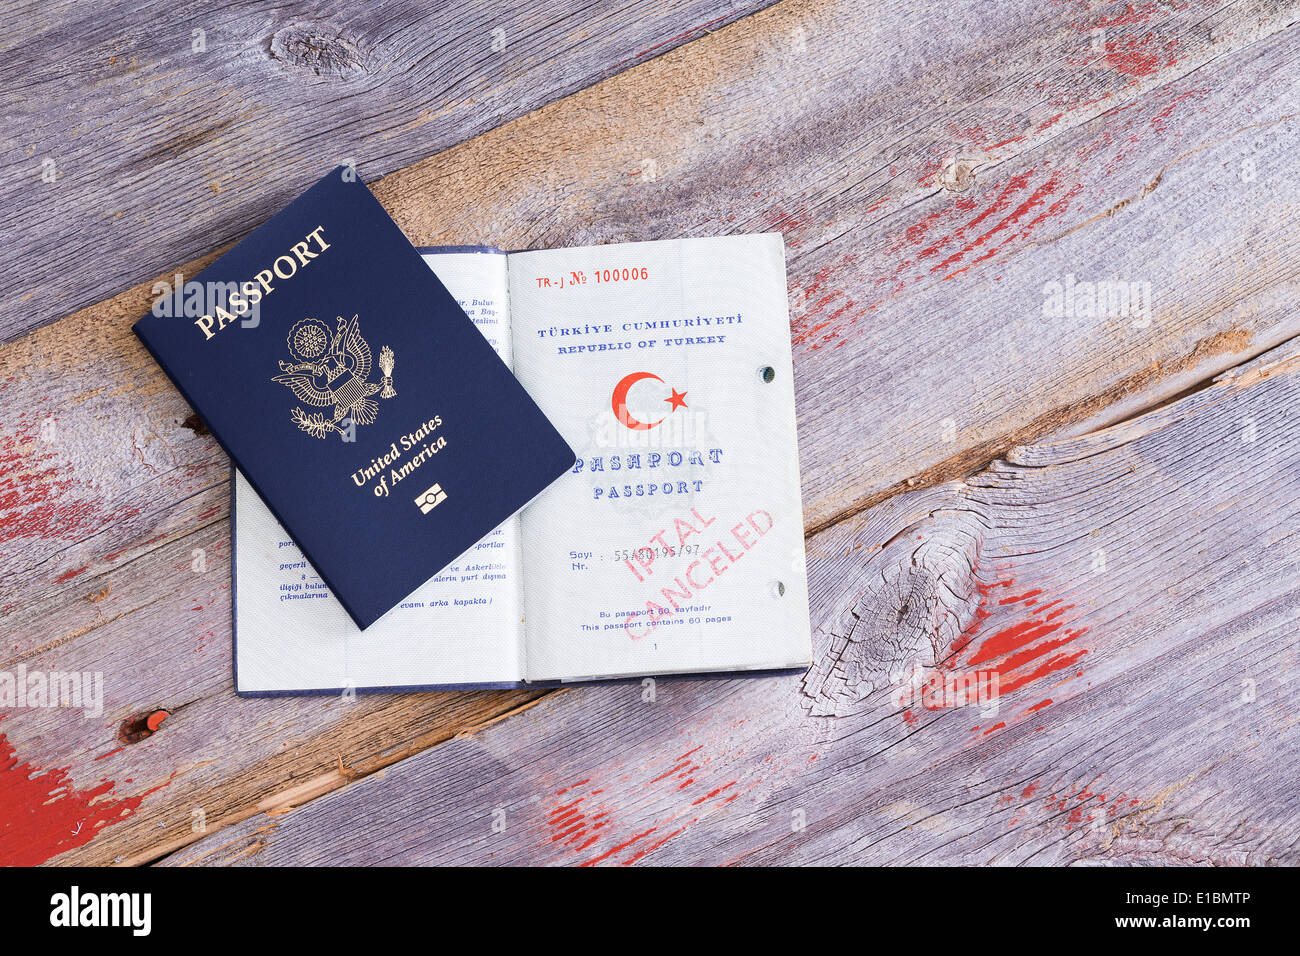 Einen amerikanischen und türkischen Pass auf einem alten Holztisch liegend mit den türkischen Pass geöffnet, um einen abgebrochenen Handstempel anzuzeigen Stockfoto